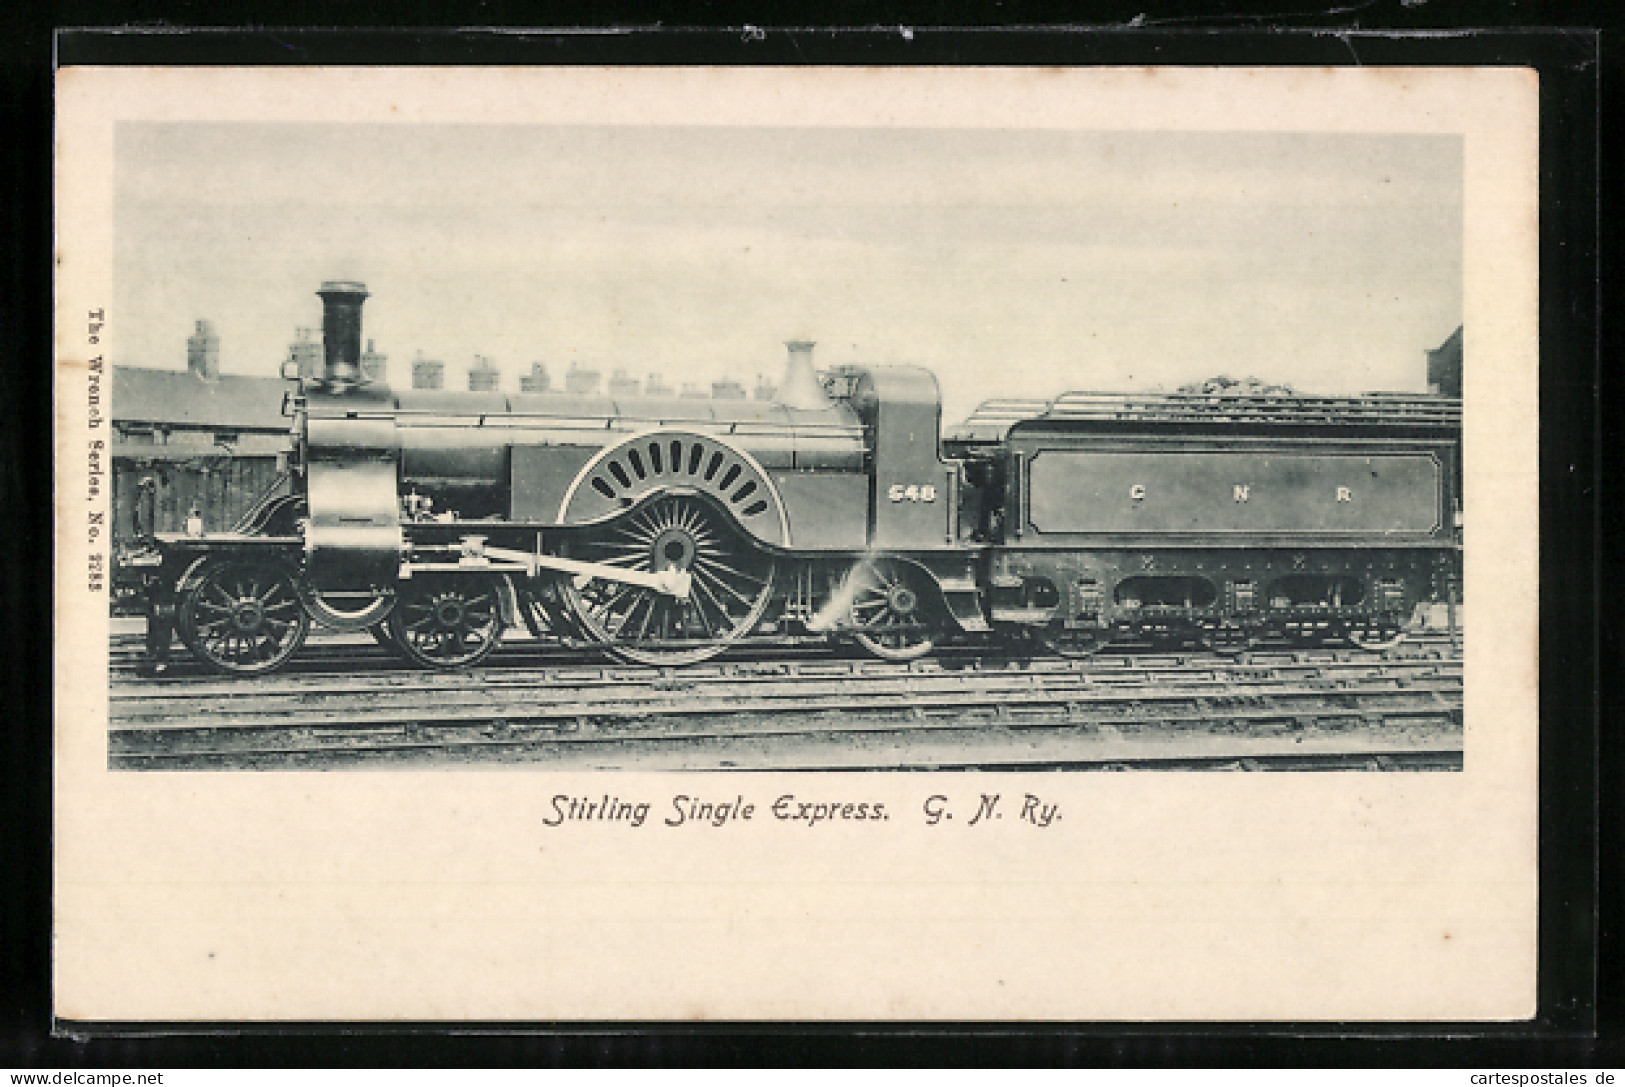 Pc Englische Eisenbahn, Lokomotive No. 548 Der C. N. R., Stirling Single Express  - Trains